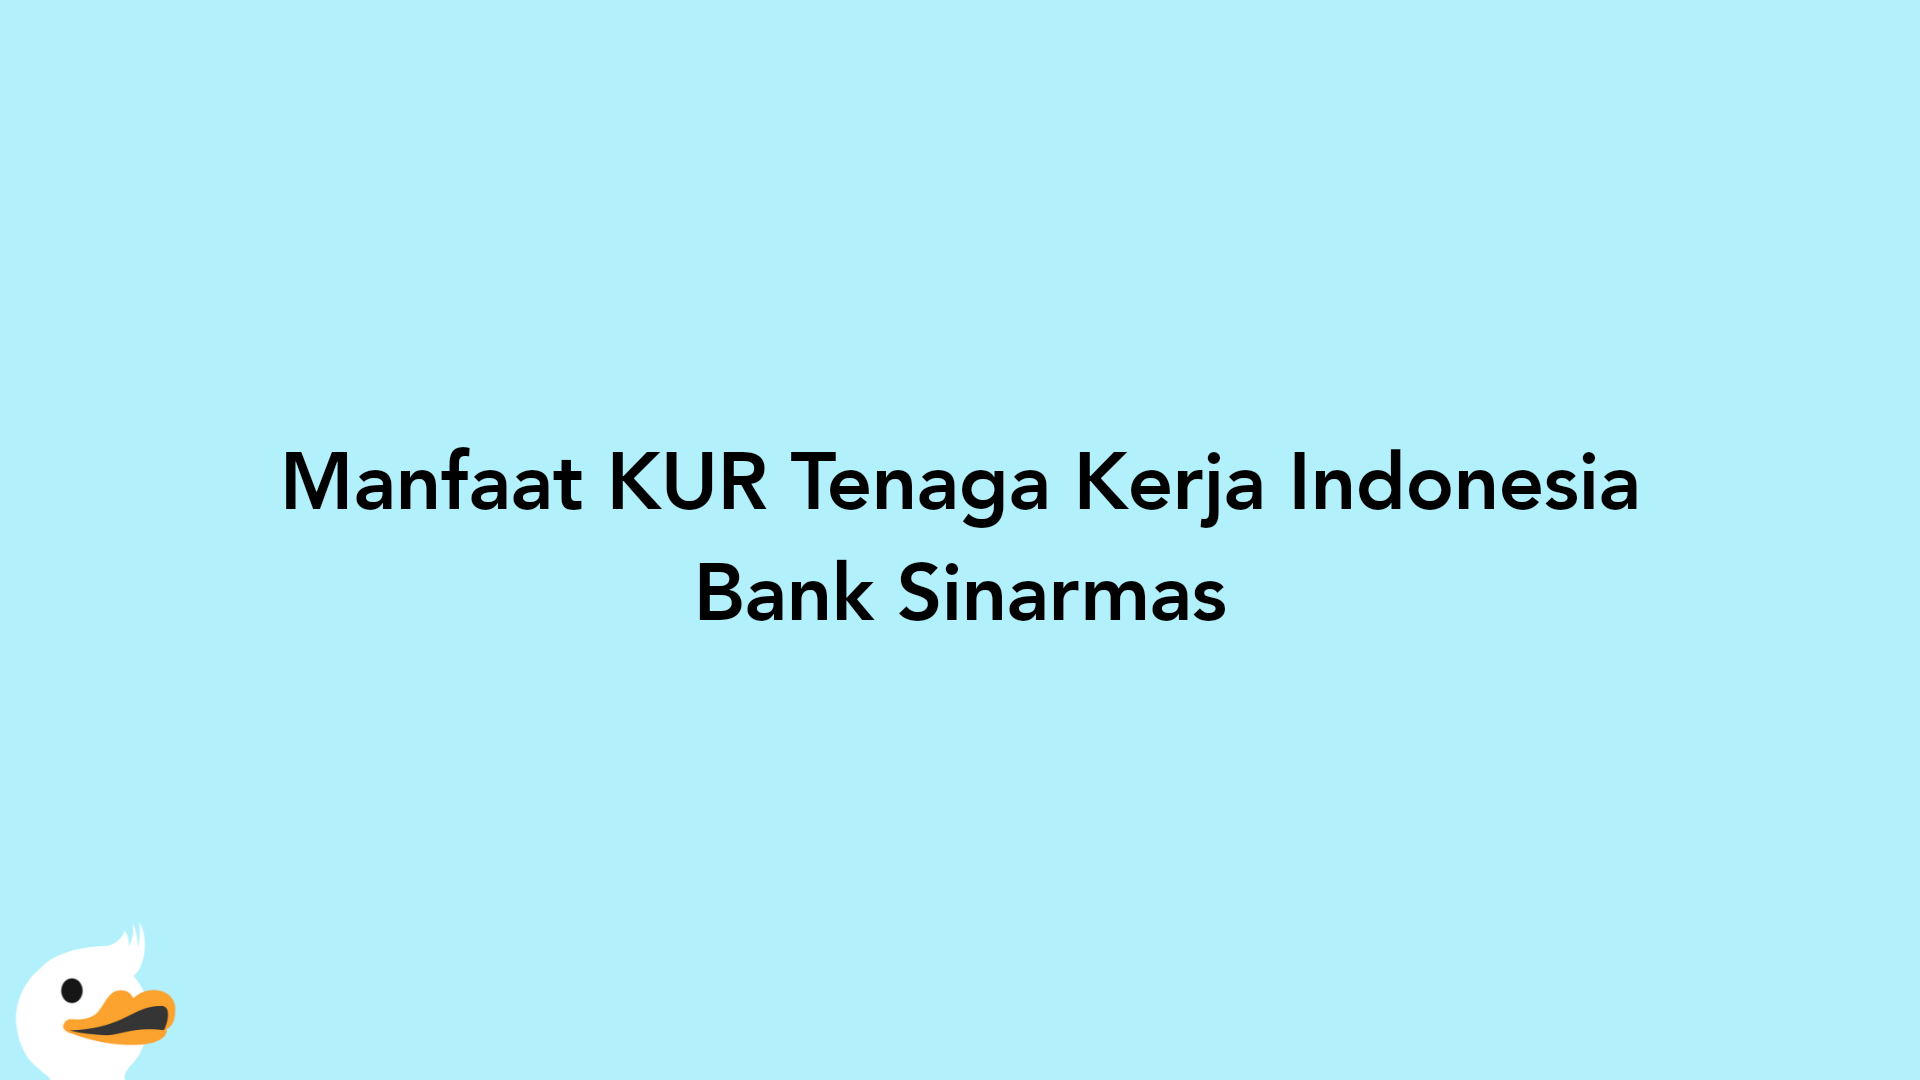 Manfaat KUR Tenaga Kerja Indonesia Bank Sinarmas